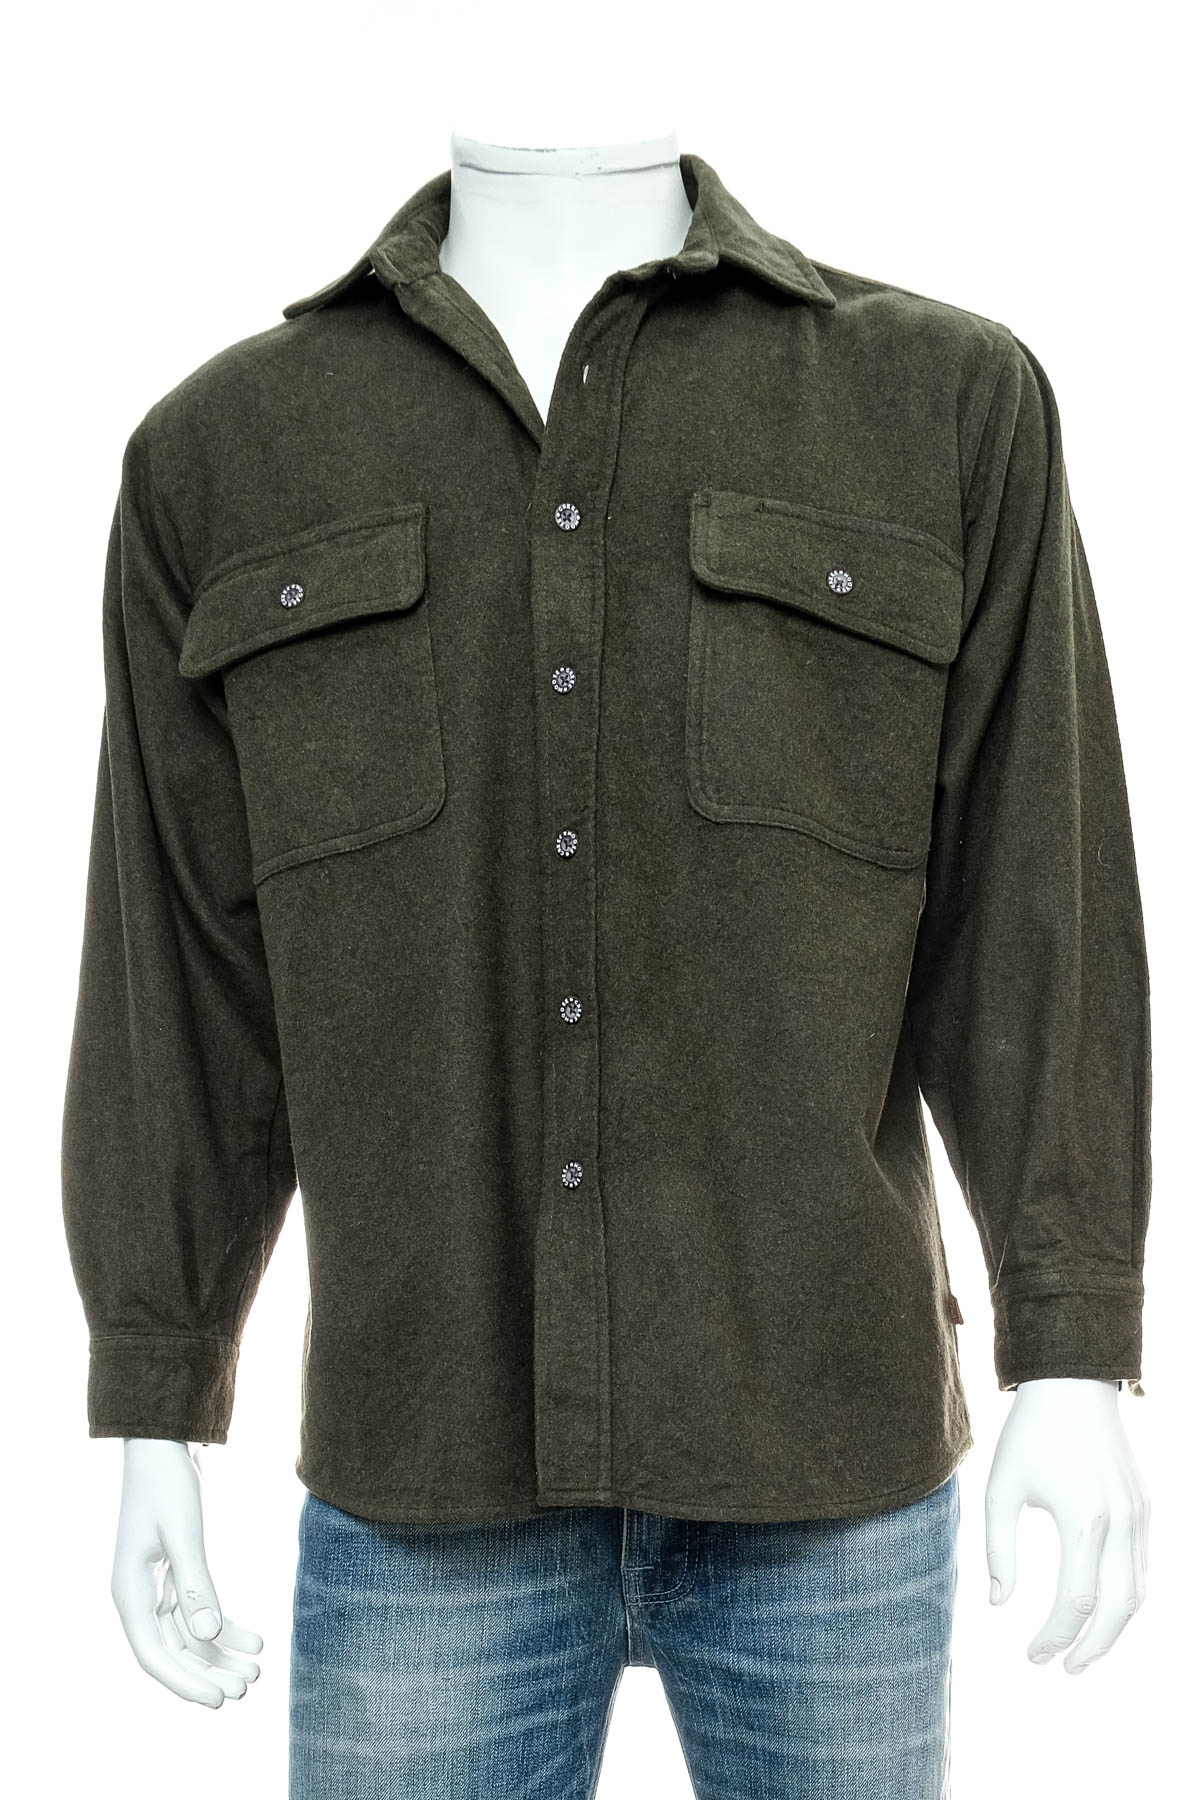 Men's shirt - Moose Creek - 0